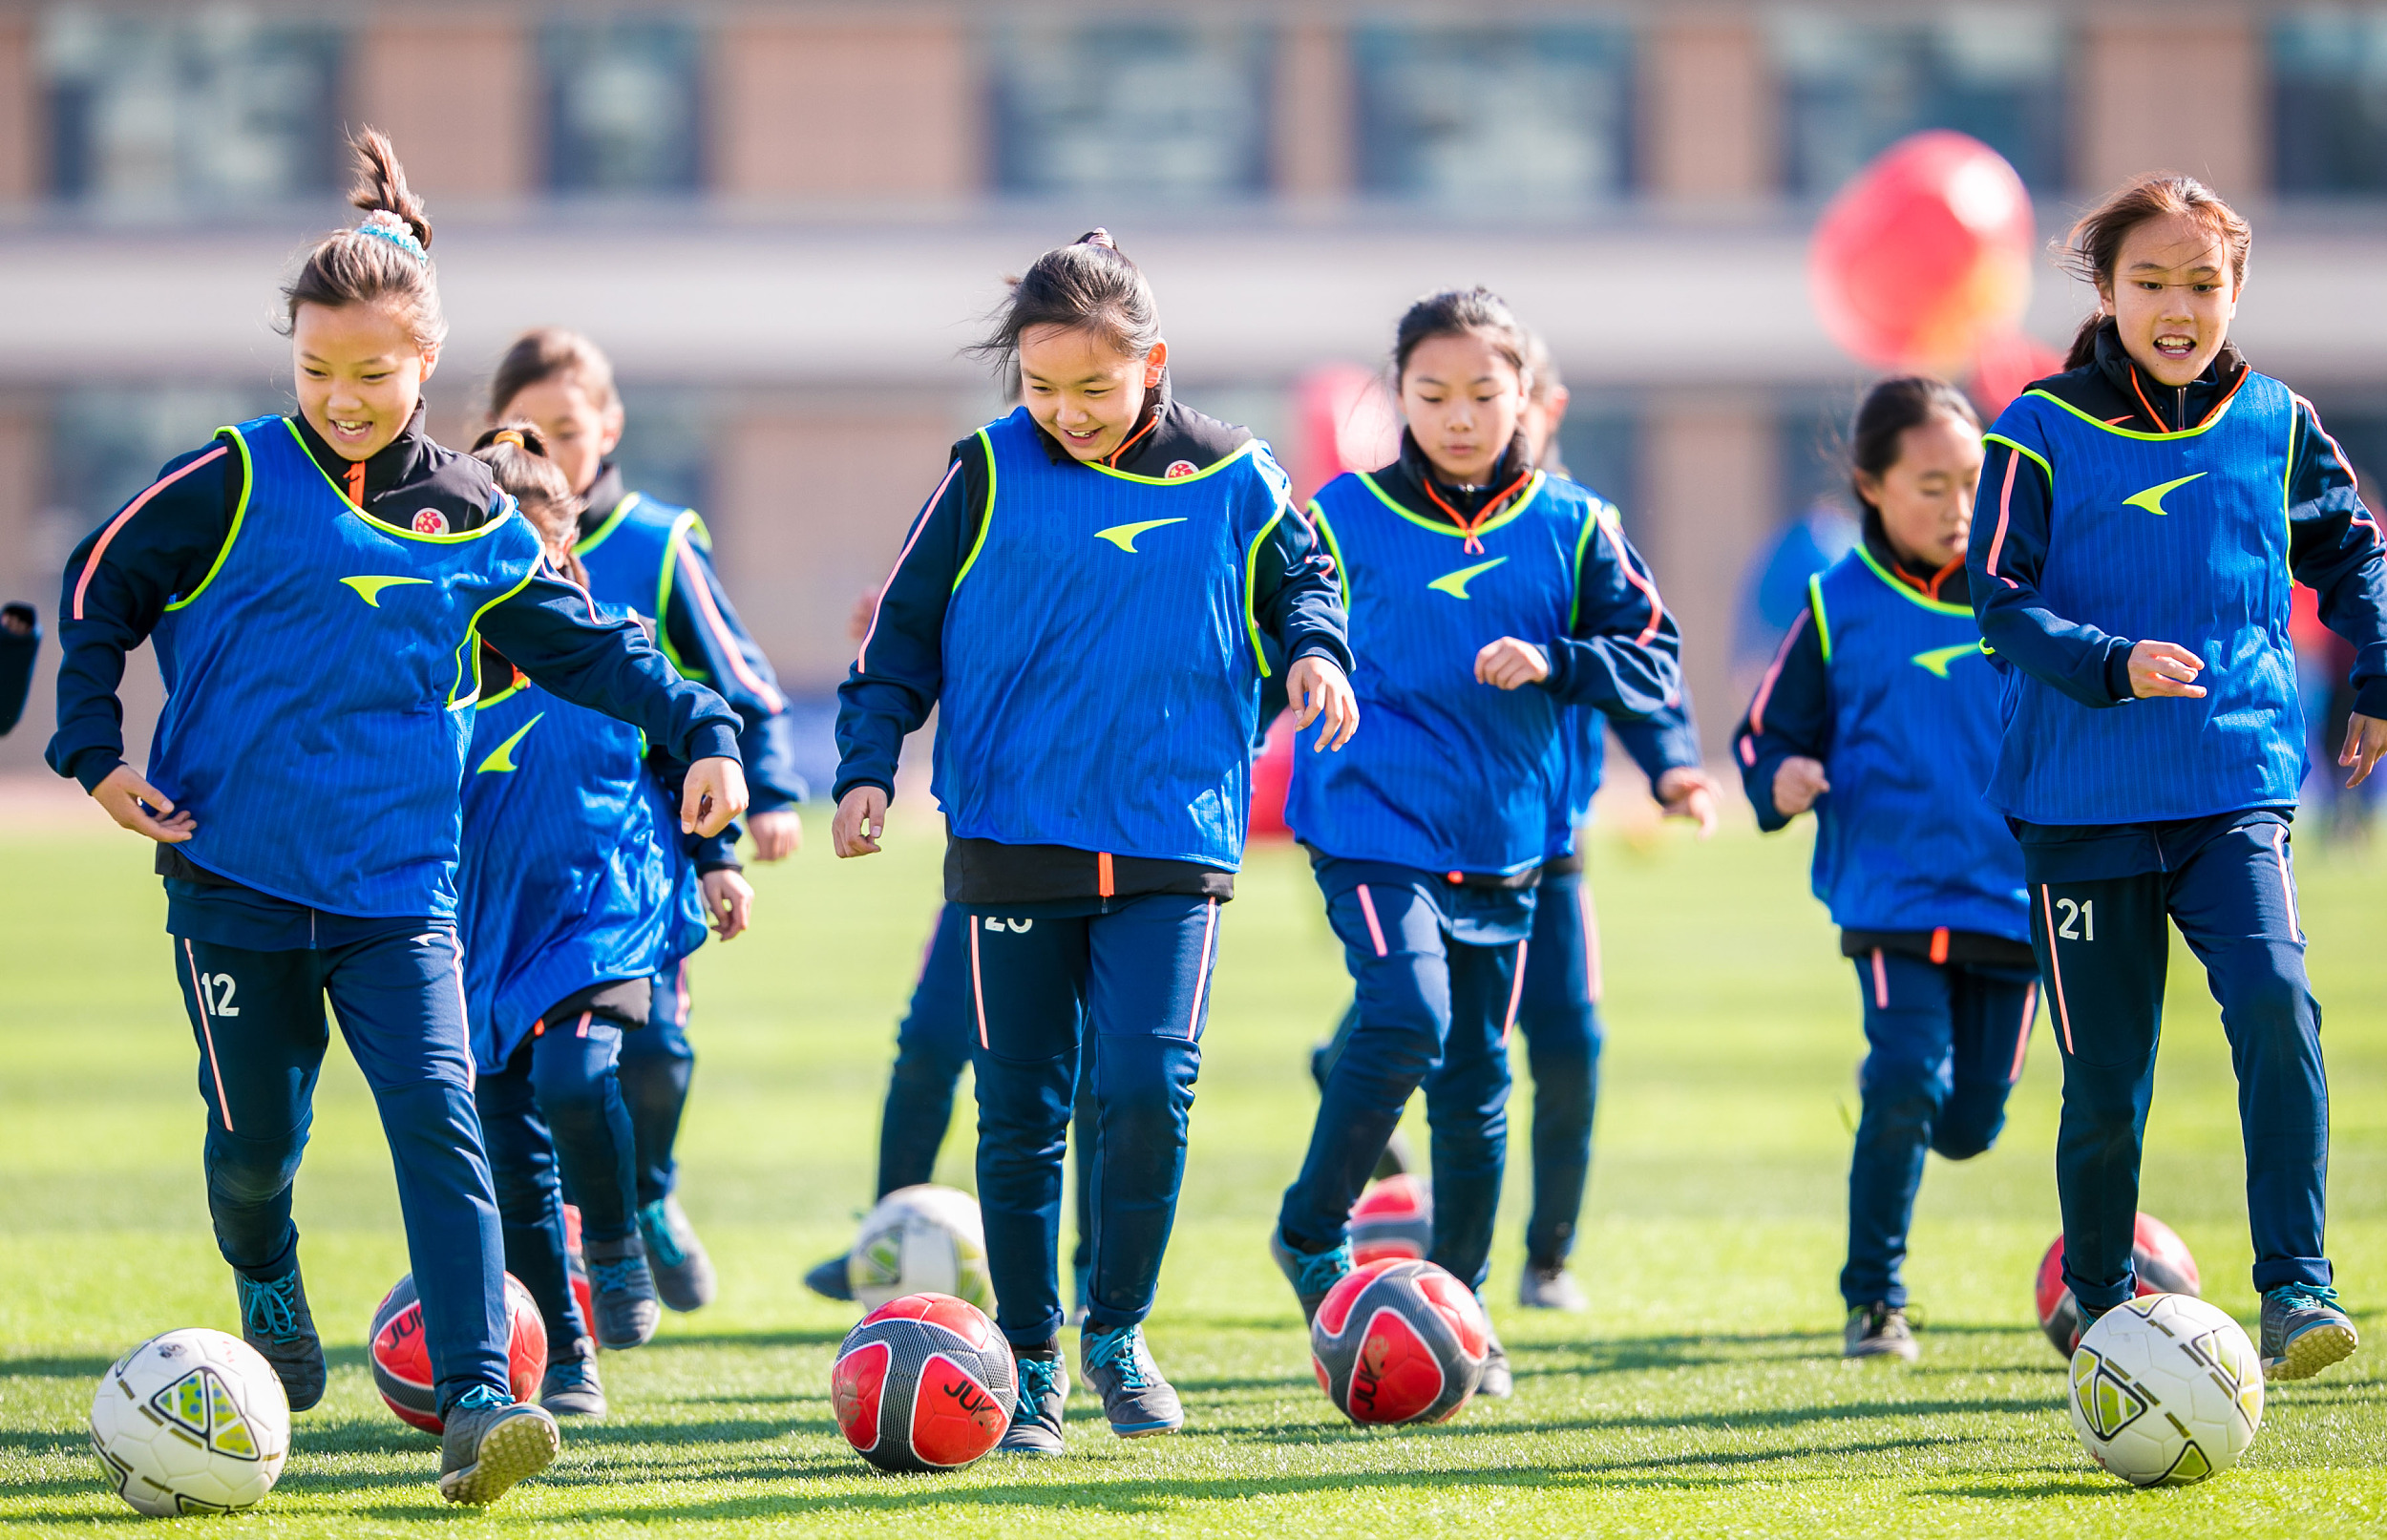 中国女足的胜利应在场外让更多女孩自由地去操场踢球